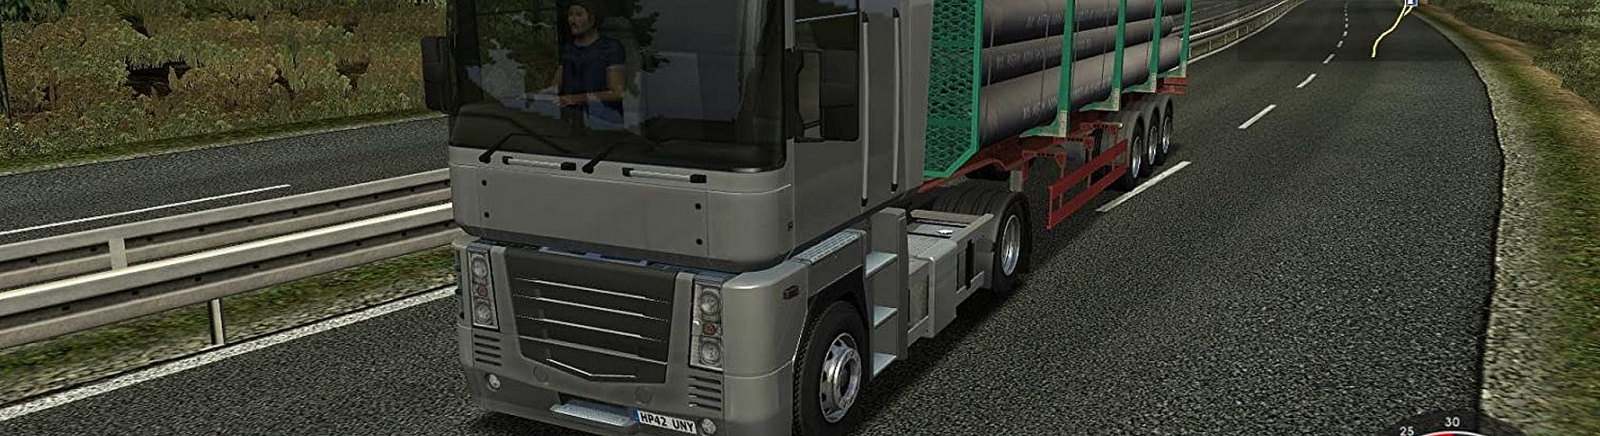 Дата выхода UK Truck Simulator  на PC в России и во всем мире